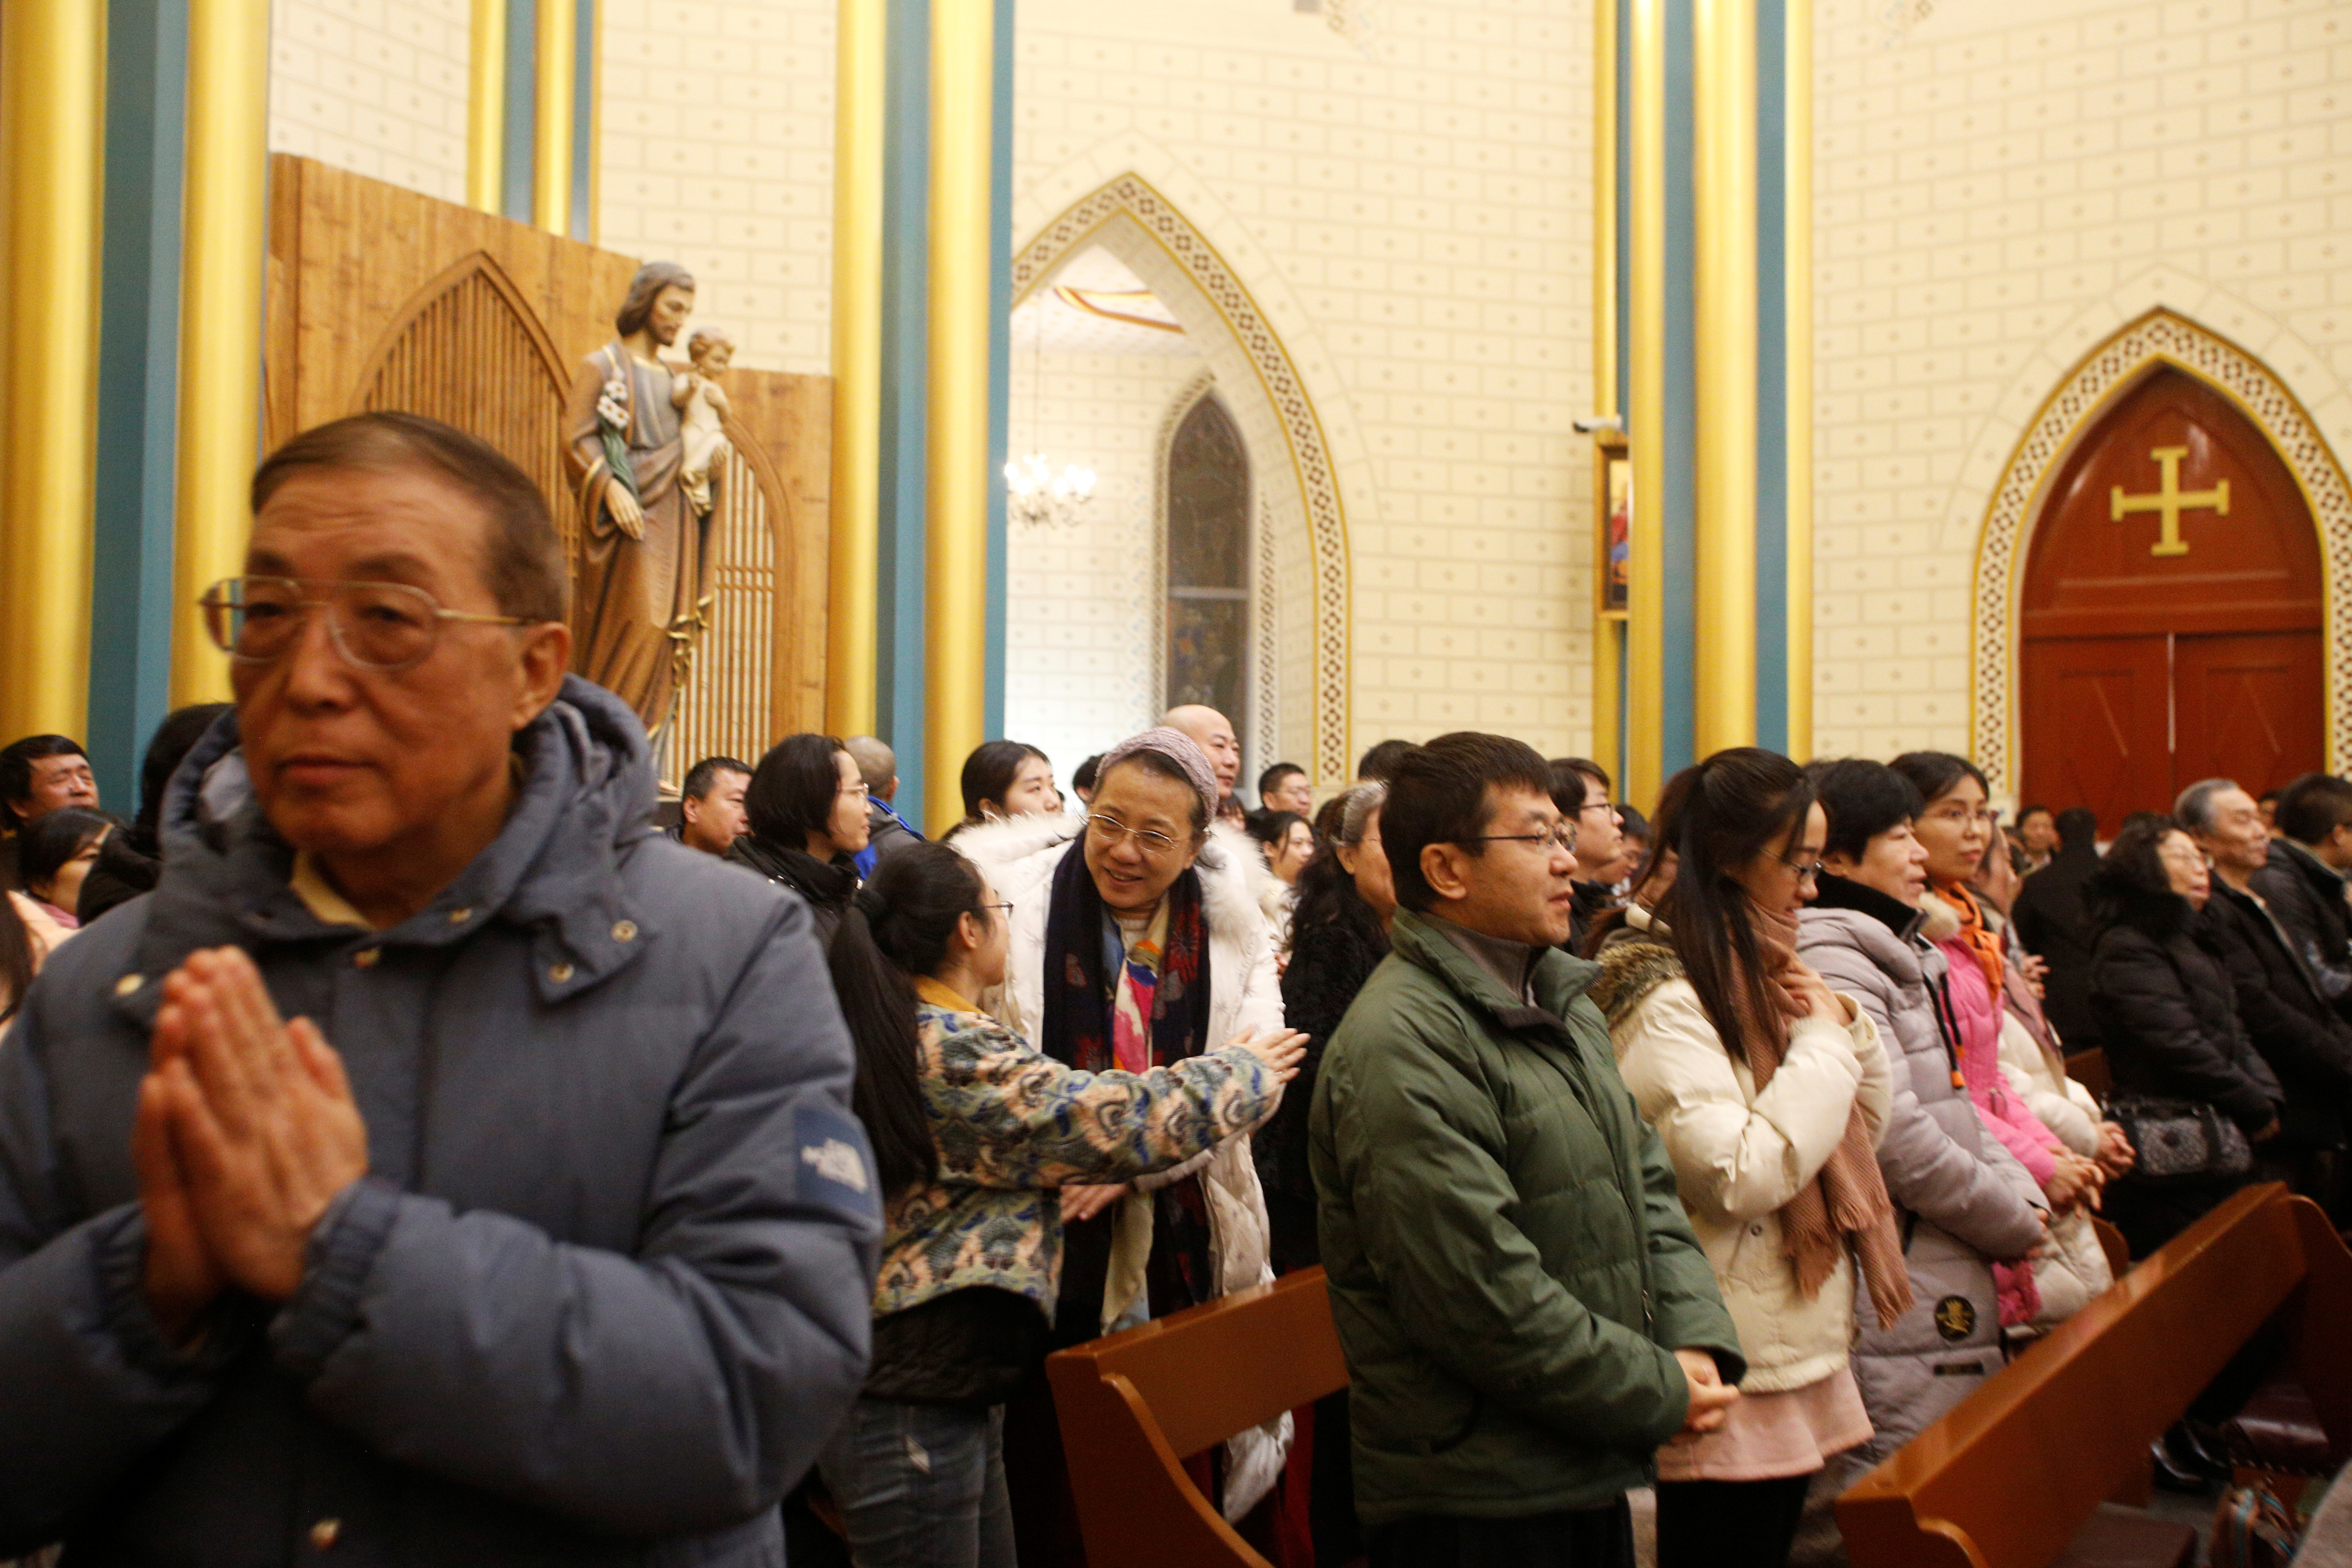 Biblias, cruces e iglesias quemadas: cómo es la persecución del régimen  chino contra la minoría cristiana - Infobae